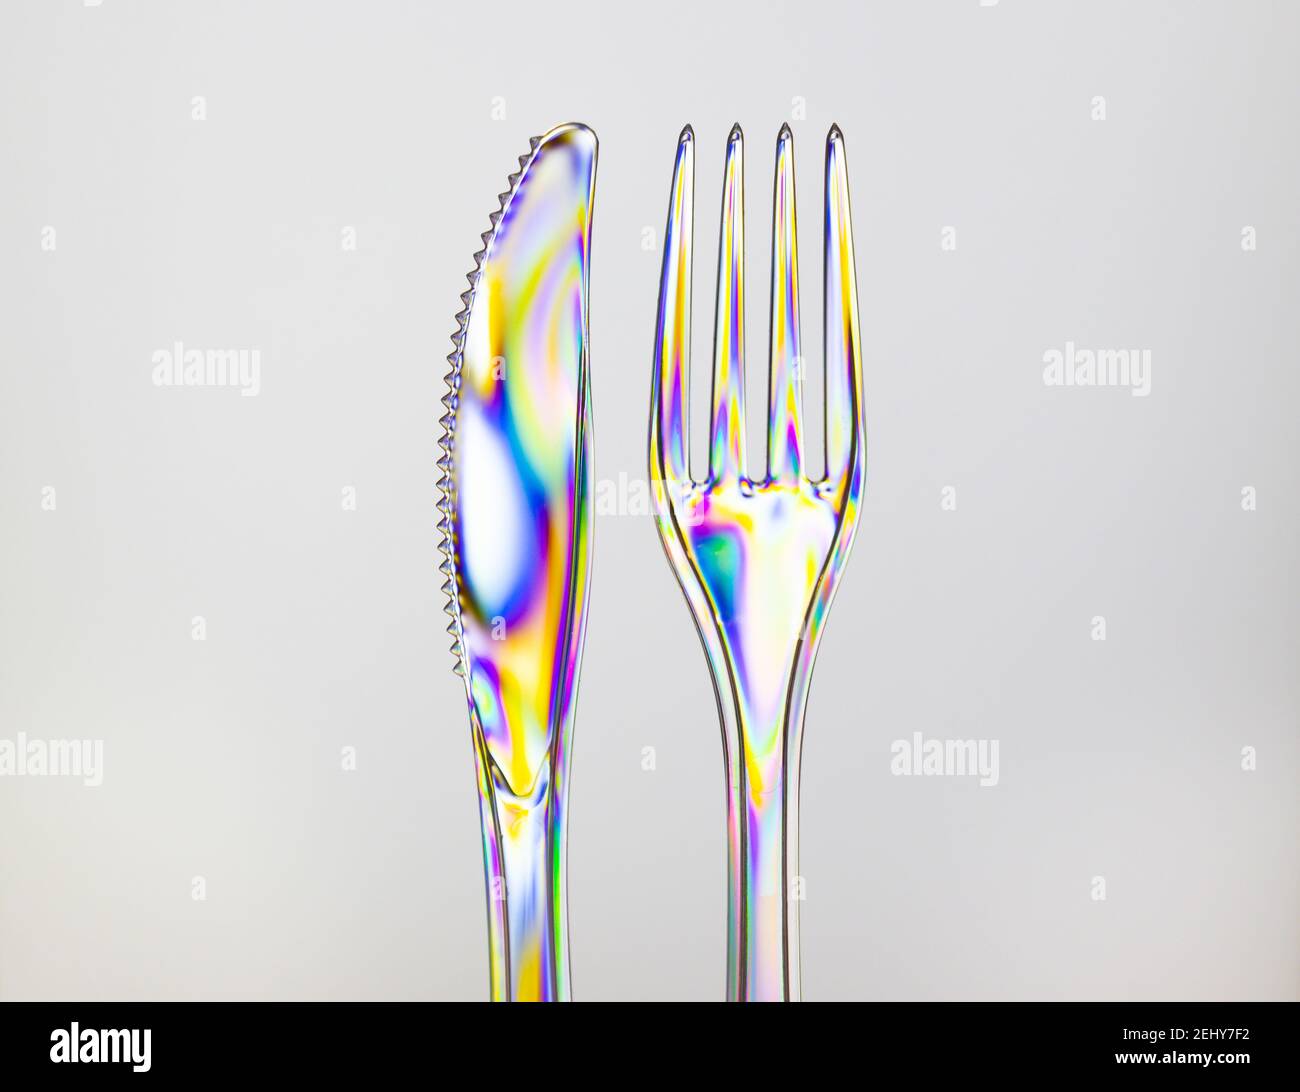 Horquilla y cuchillo de plástico transparente, color arco iris por fotoelasticidad aislada sobre fondo gris claro. Foto de stock